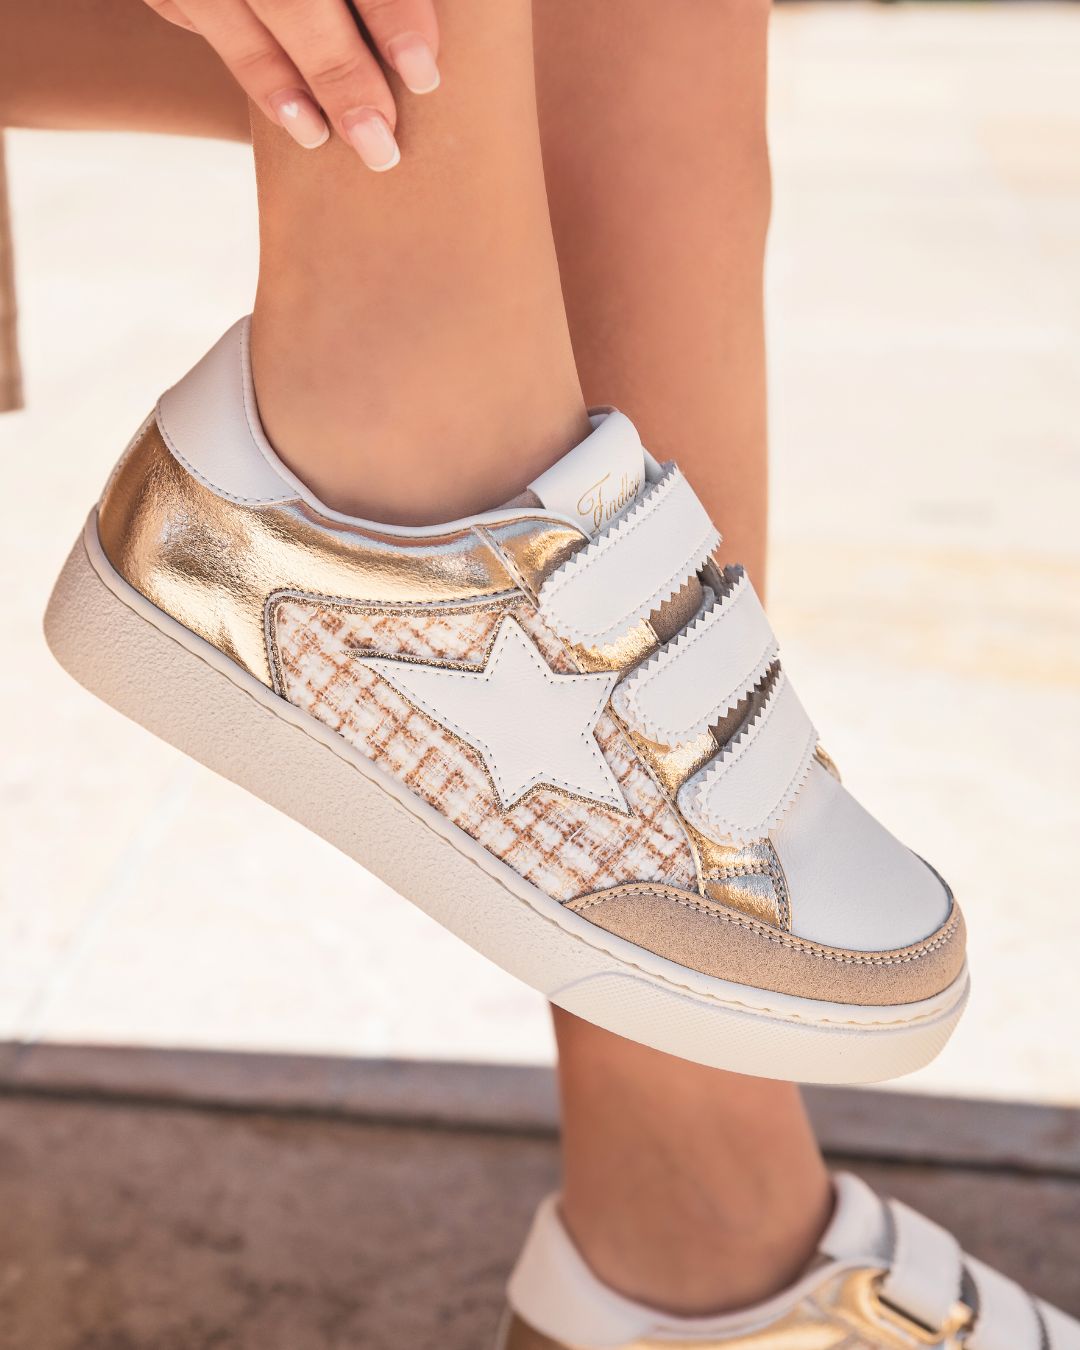 Sneaker für Damen mit goldenem Stern und weißen Schnürsenkeln - Céline - Casualmode.de